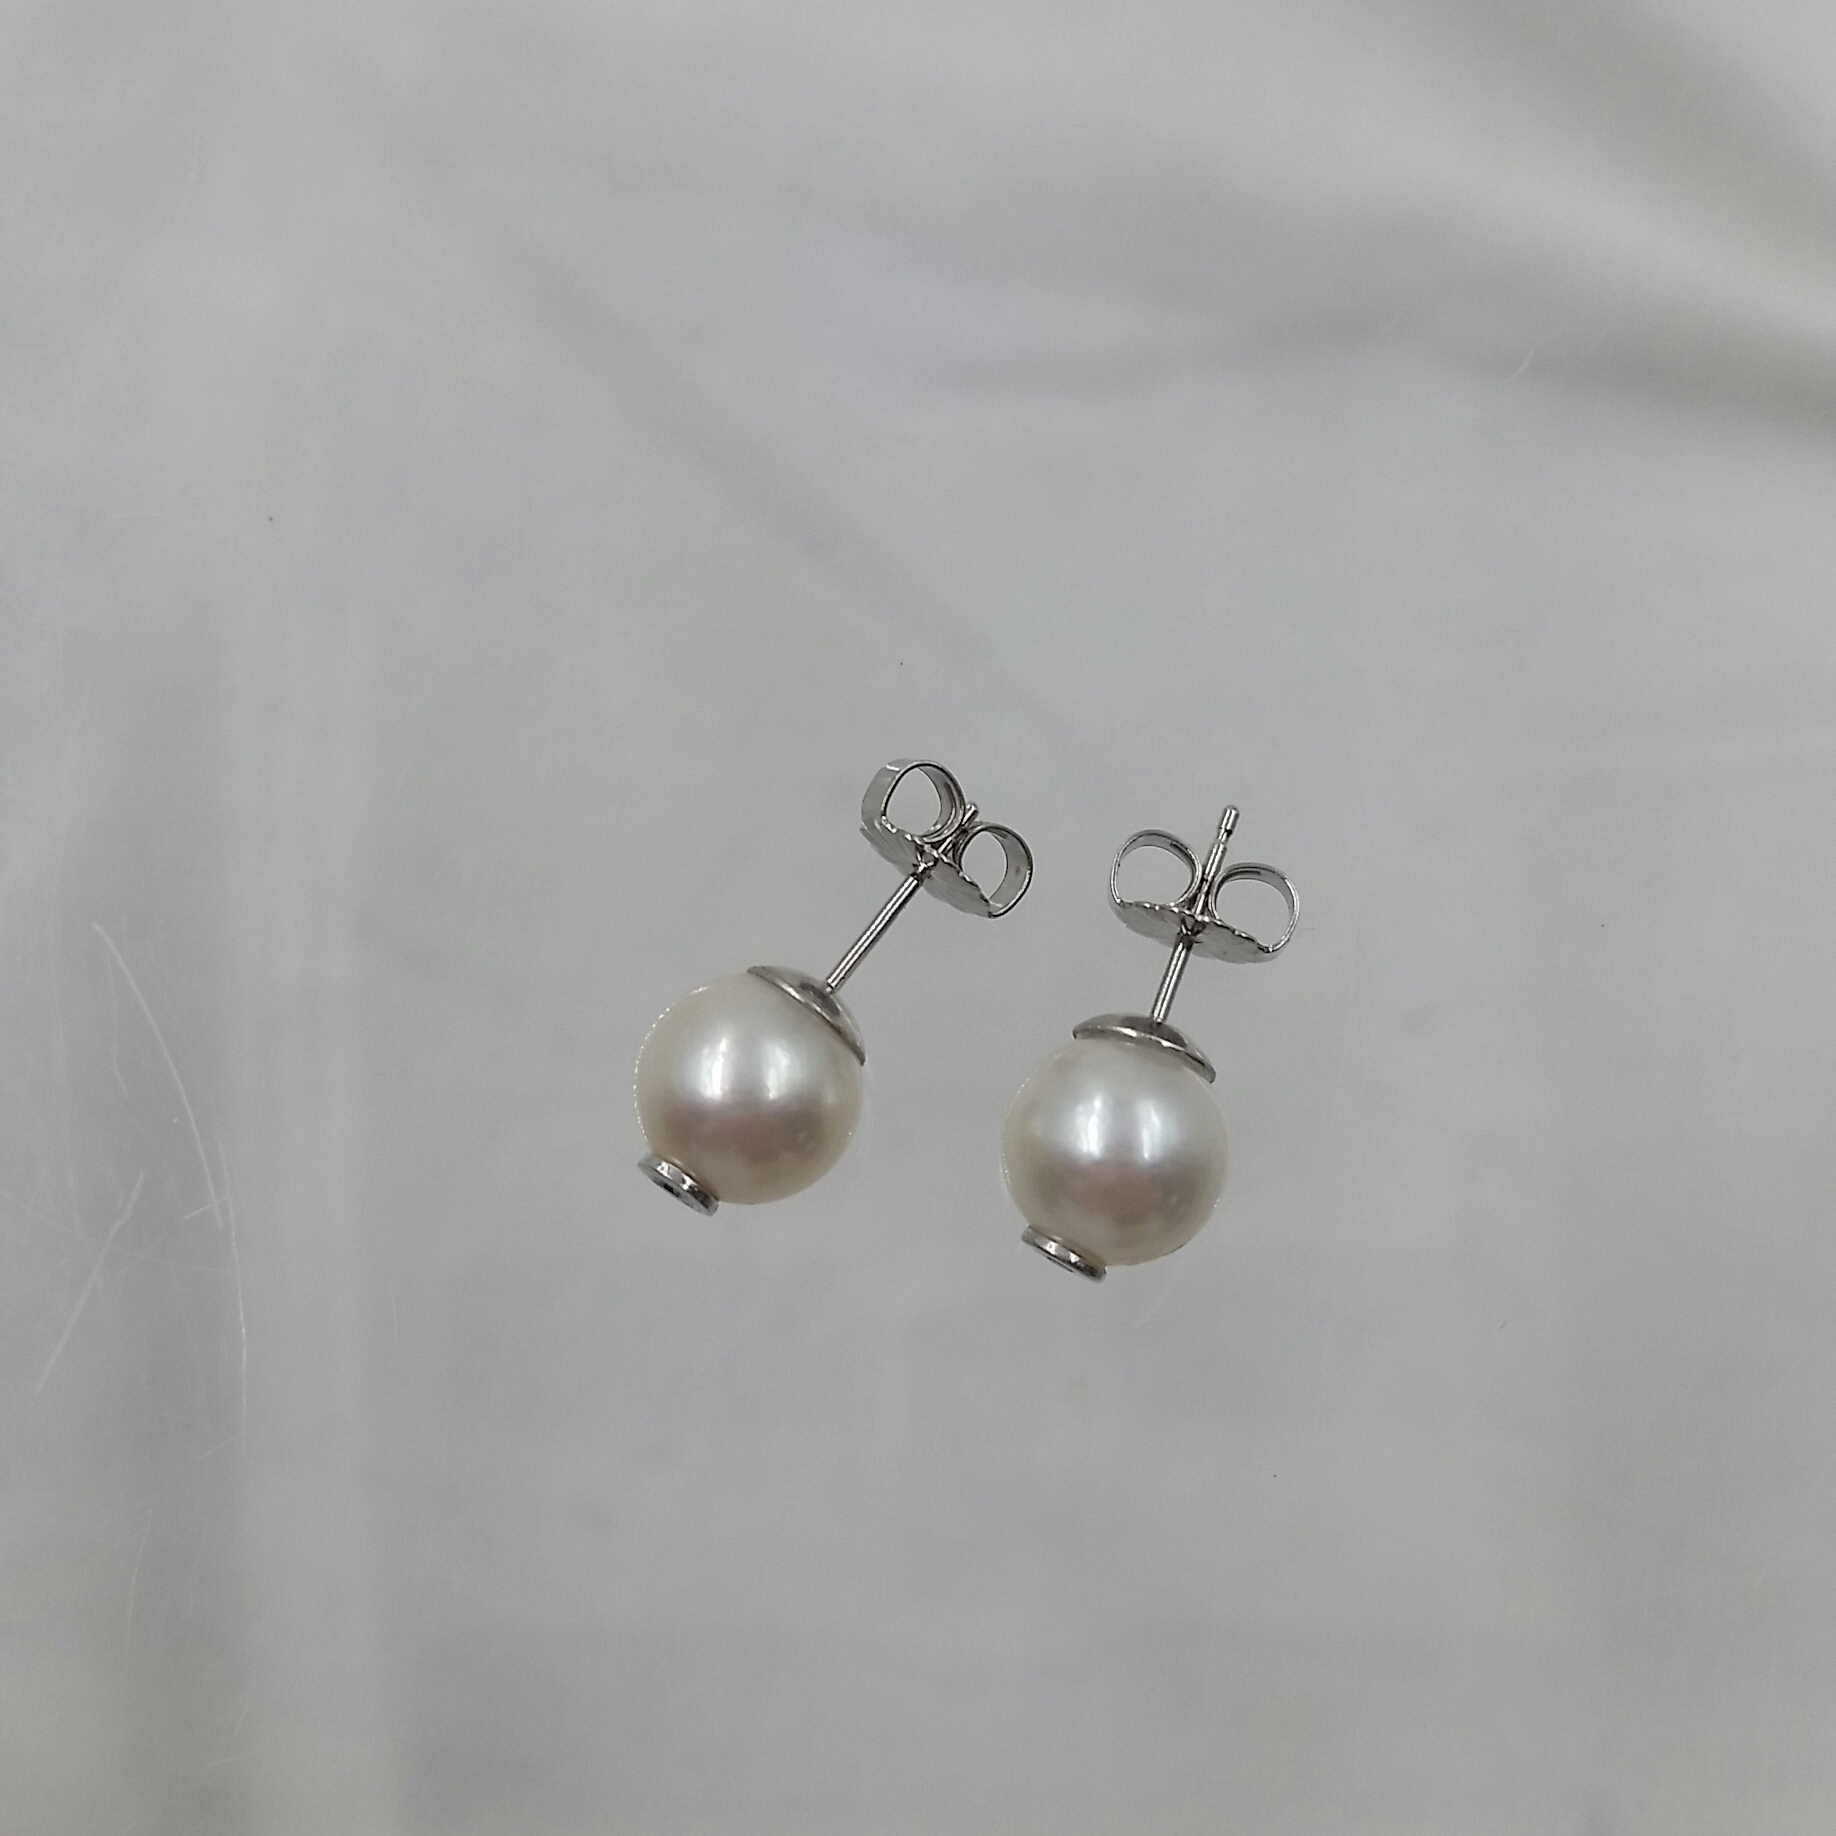 14 Karat White Gold Cultured Pearl & Diamond Ear Studs - S & K Ltd.